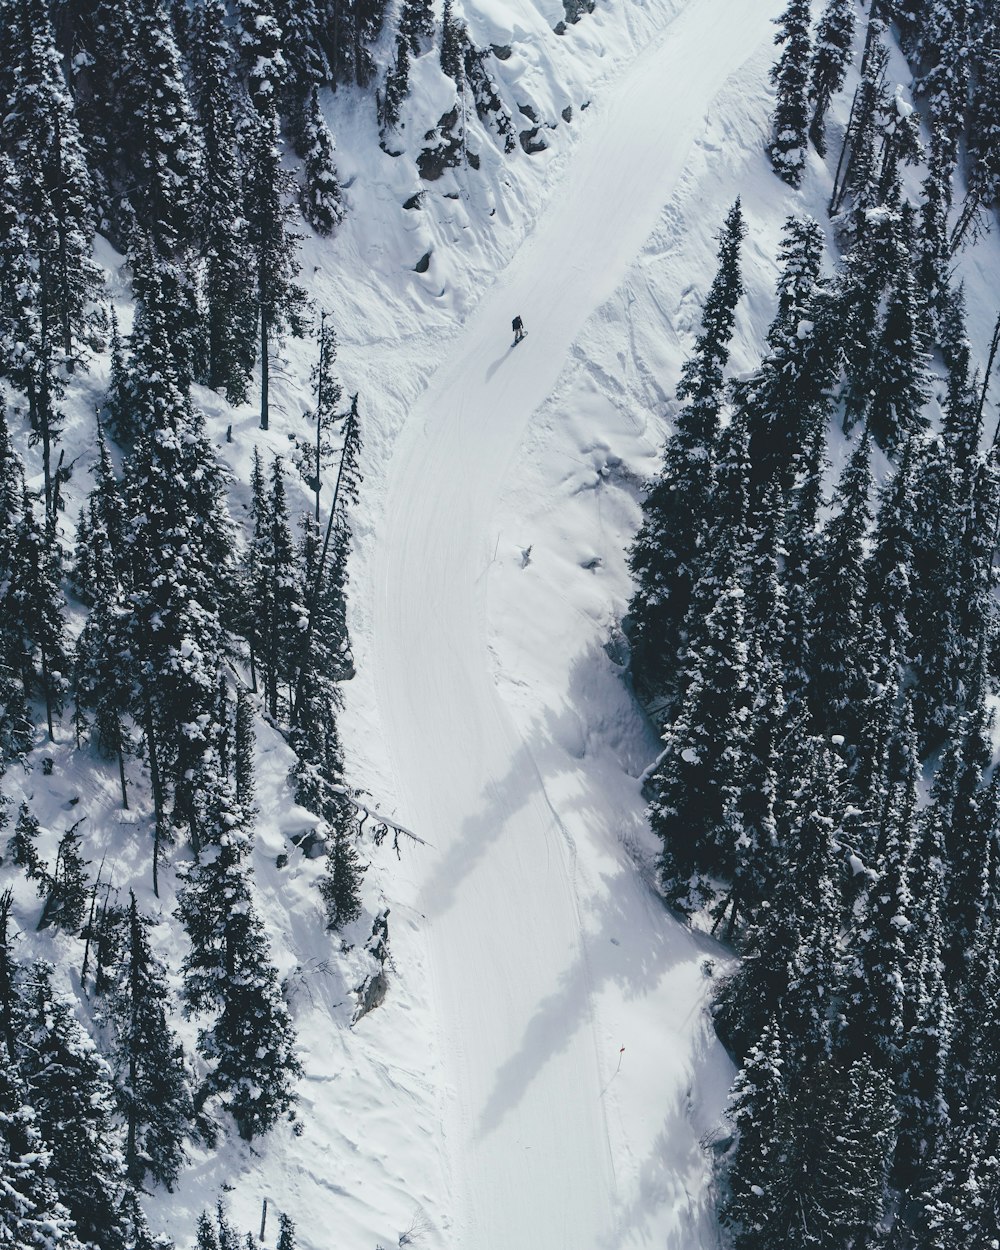 Luftaufnahme einer Person, die auf dem Schneeberg Ski fährt\